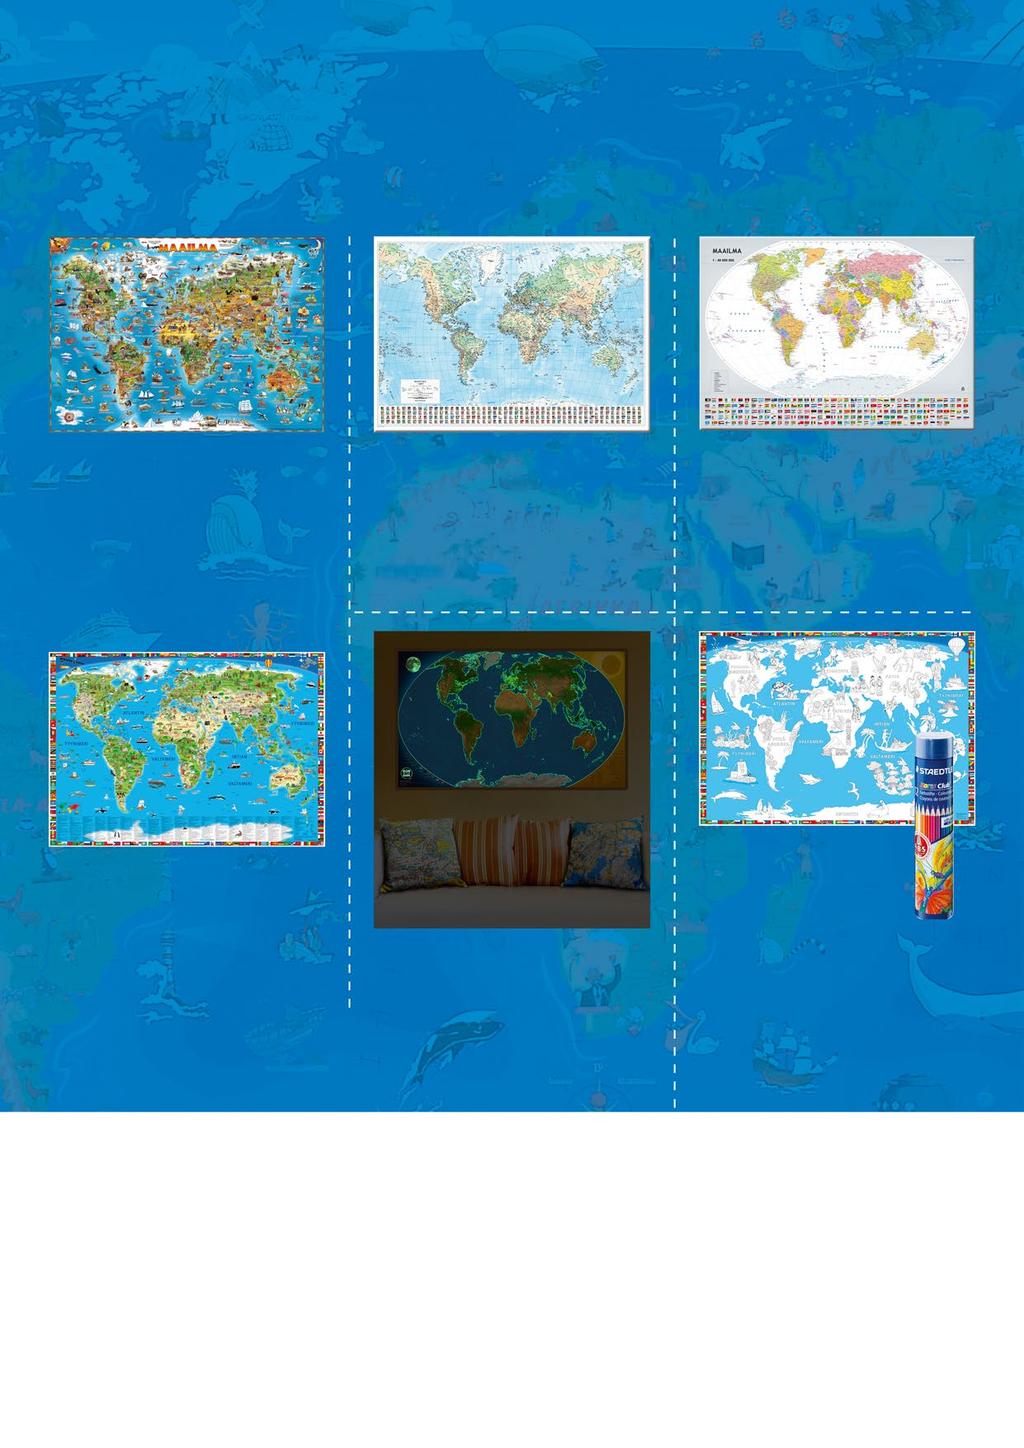 Seinäkartat 24 Seinäkartoilla maailma järjestykseen Karttakeskuksen valikoimissa on runsaasti seinäkarttoja sekä Suomesta että maailmalta.